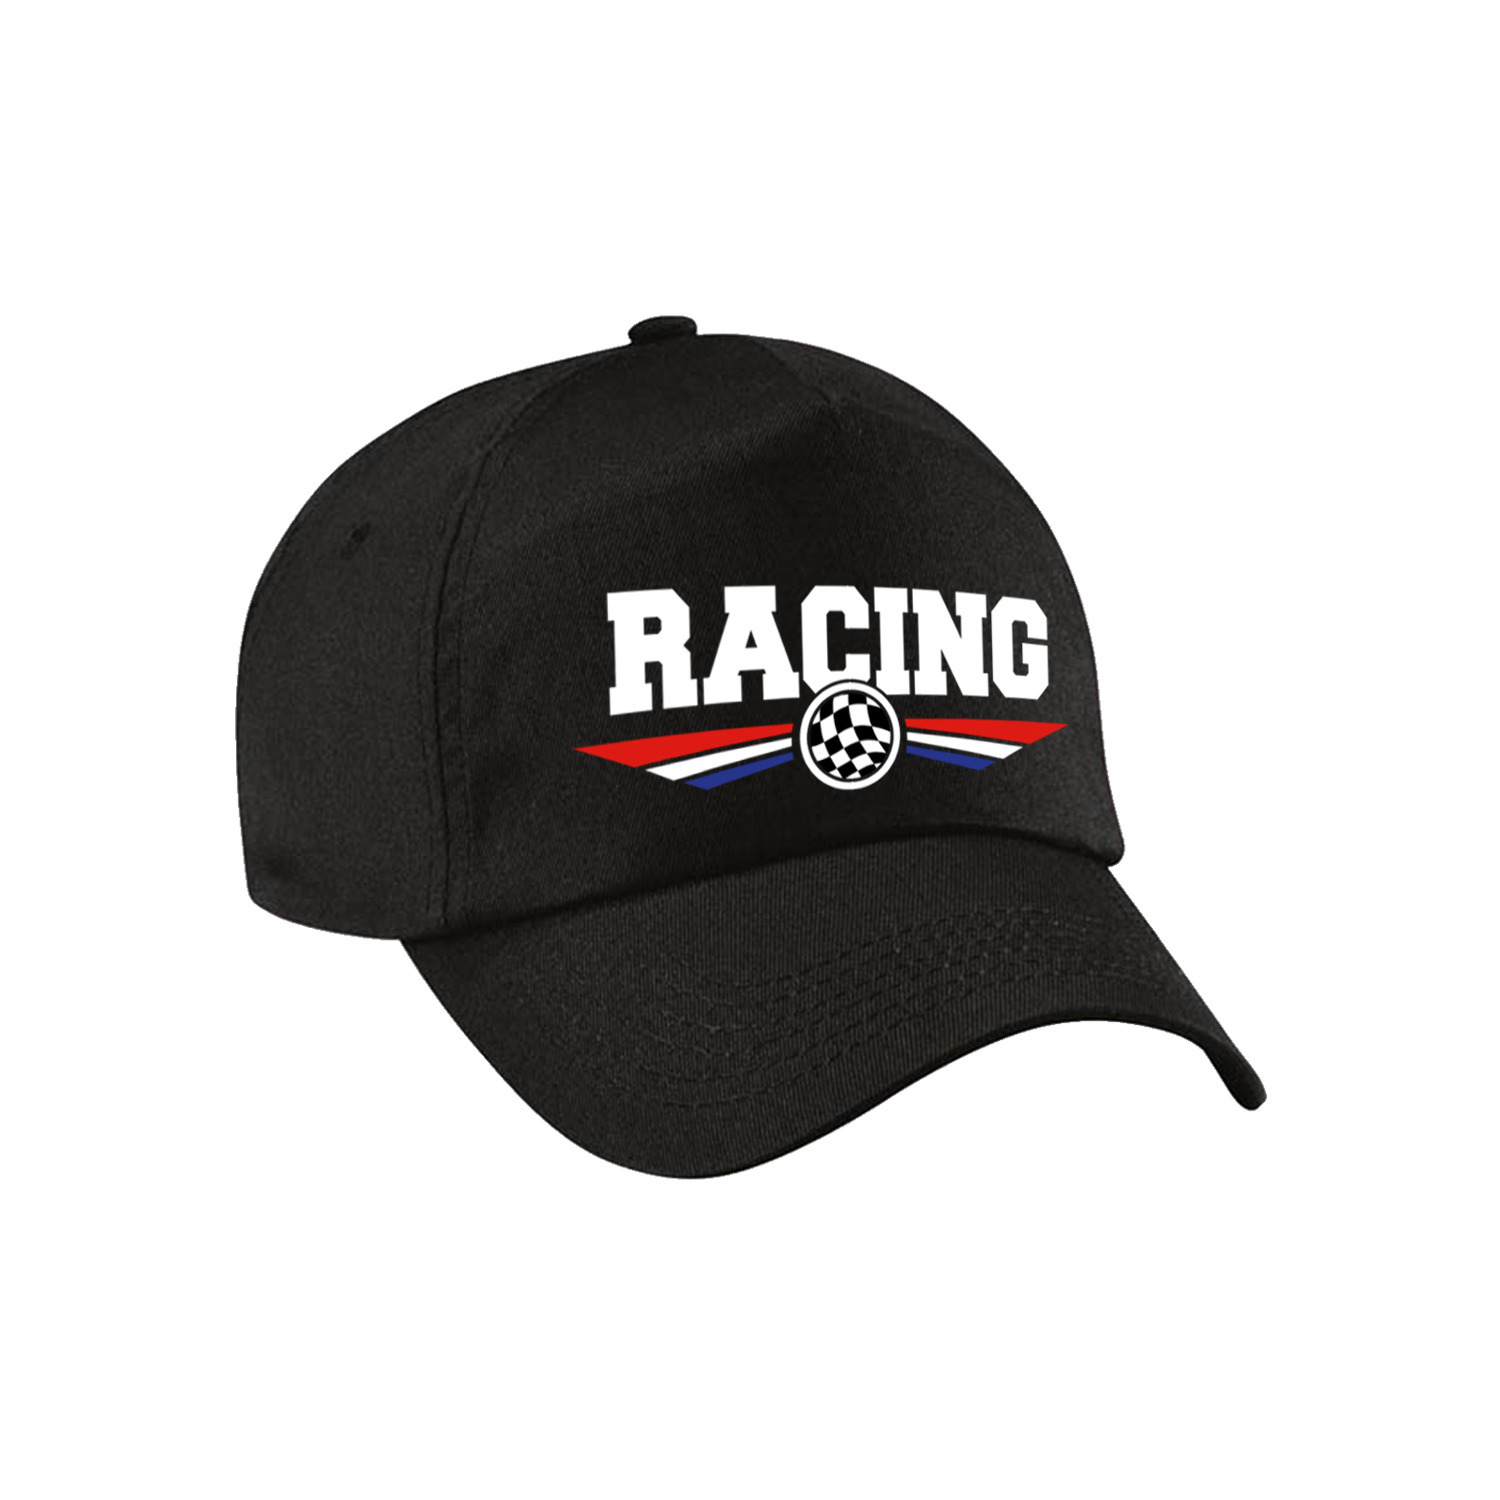 Racing coureur supporter pet / baseball cap met Nederlandse vlag zwart voor kinderen